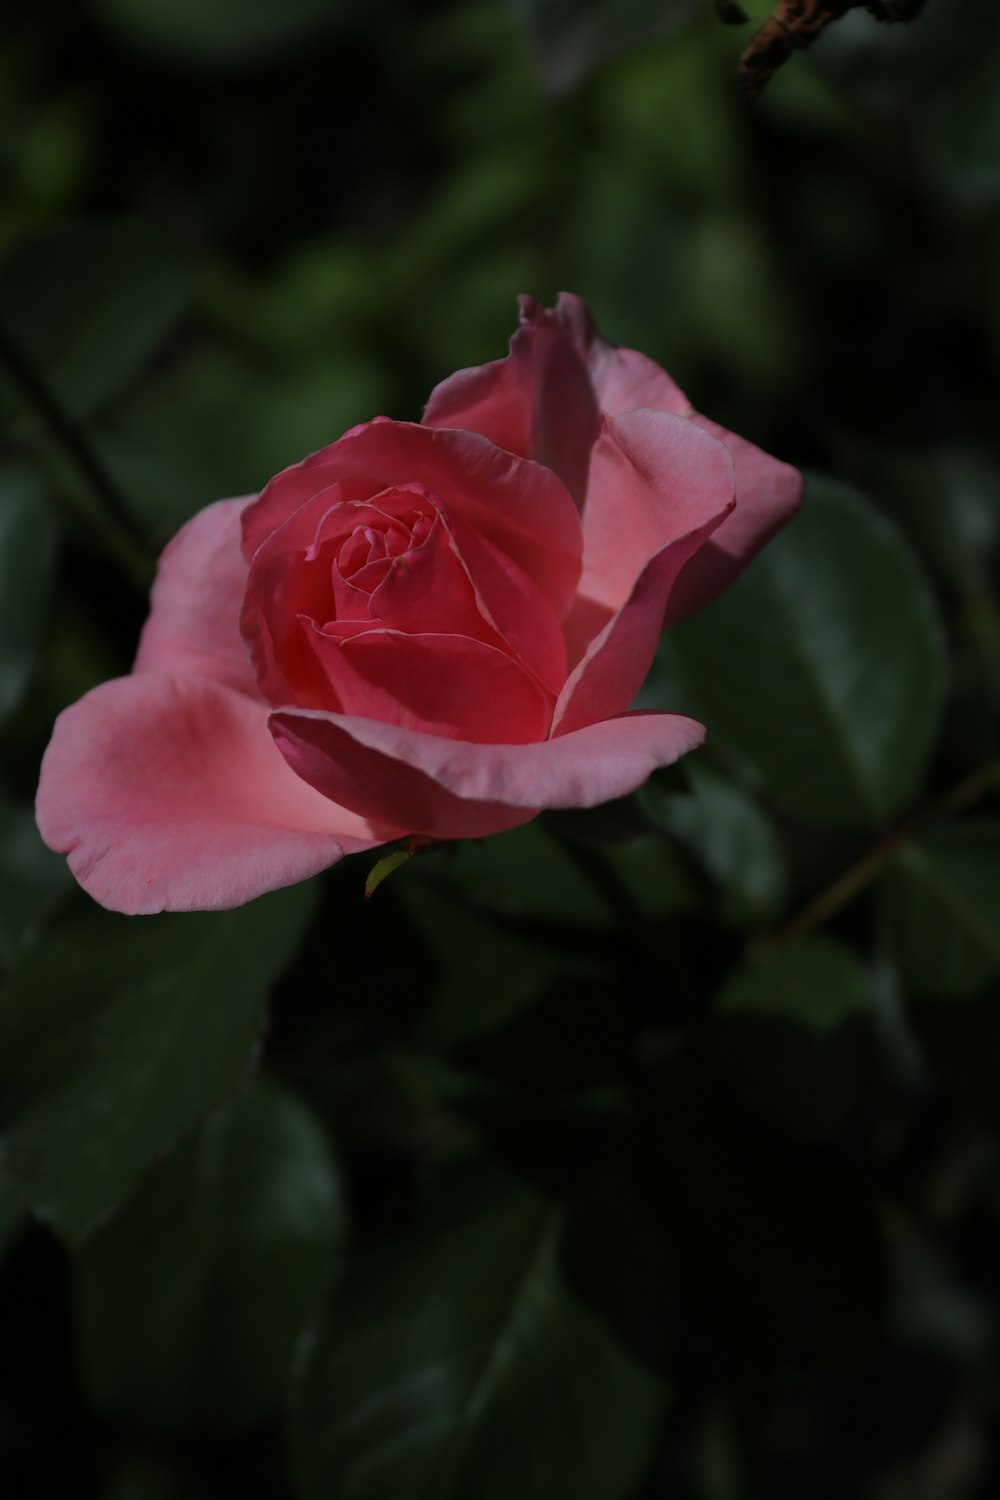 una rosa rosa con hojas verdes en el fondo